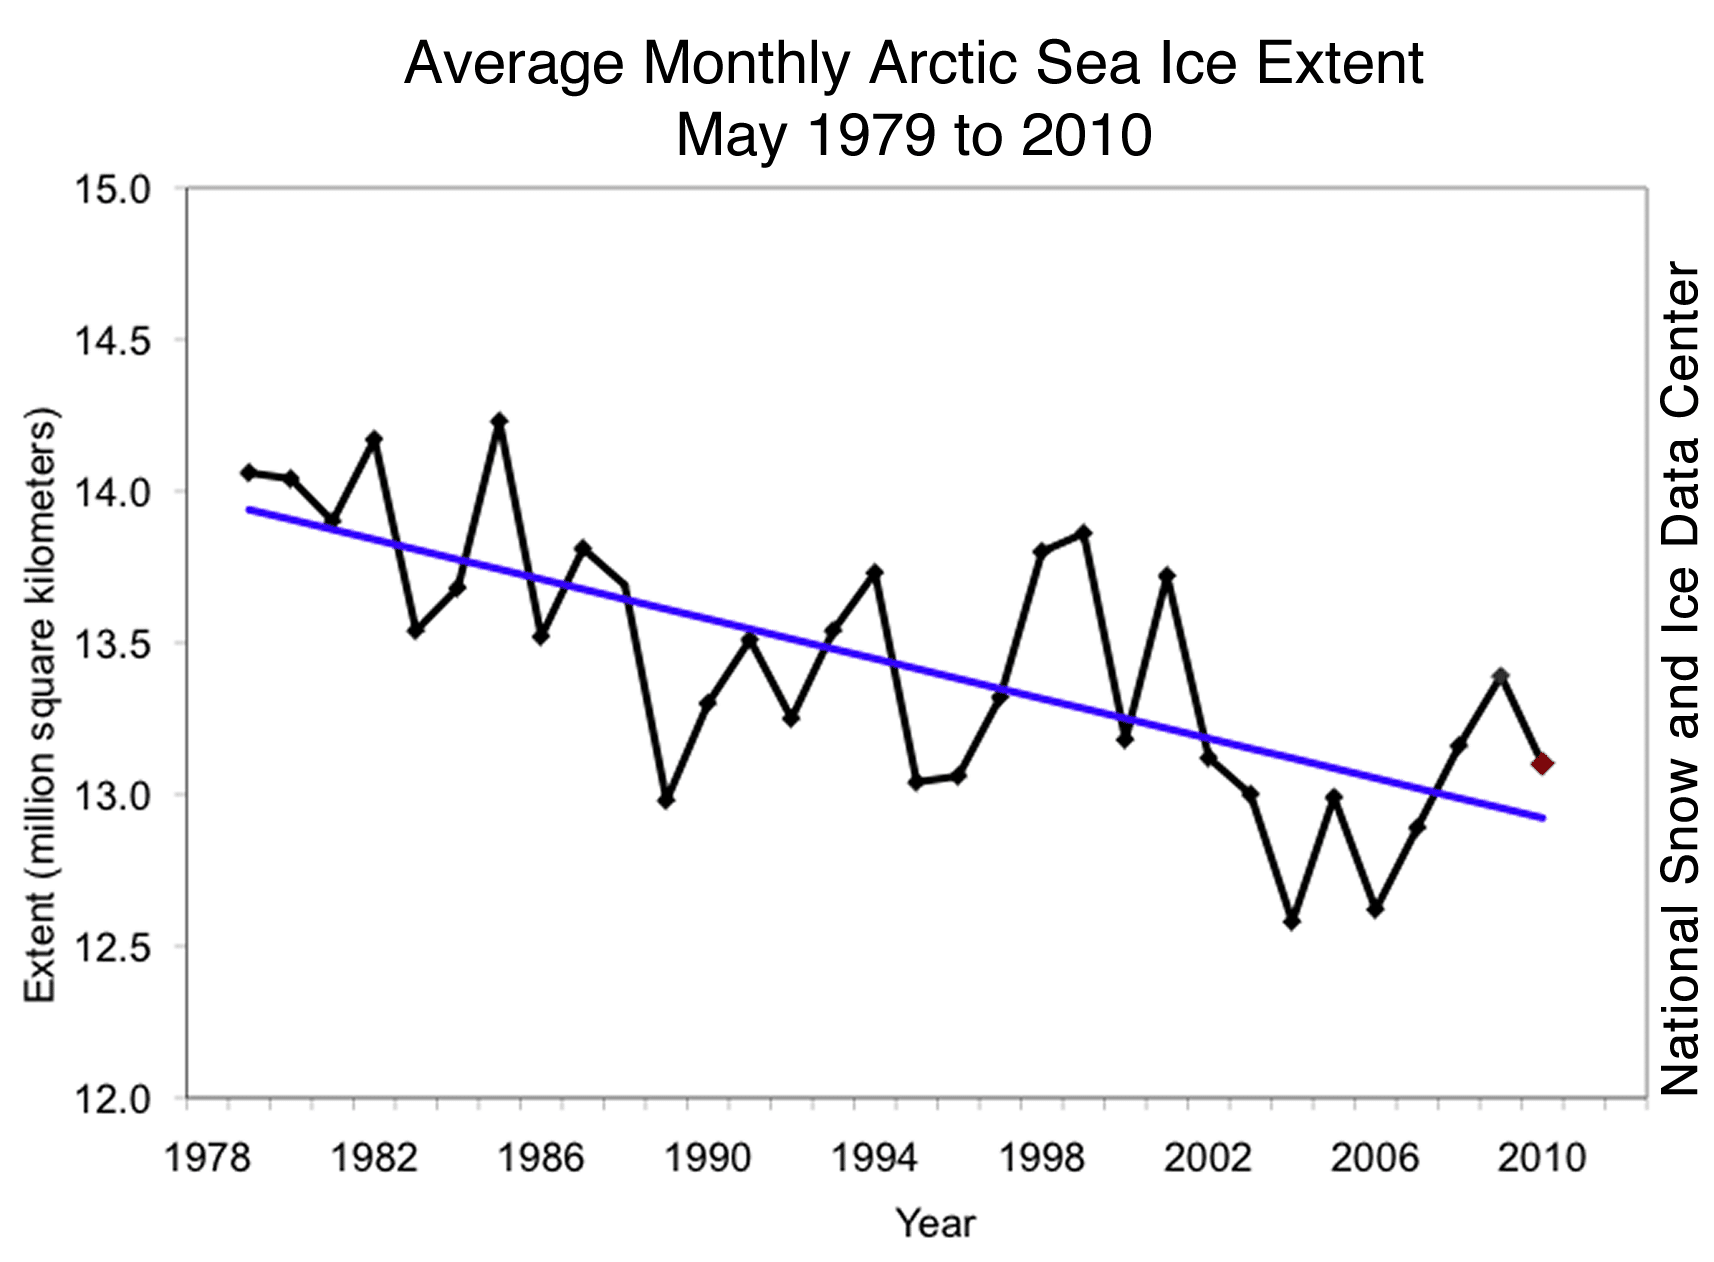 Average Monthly Arctic Sea Ice Extent 1979-2010